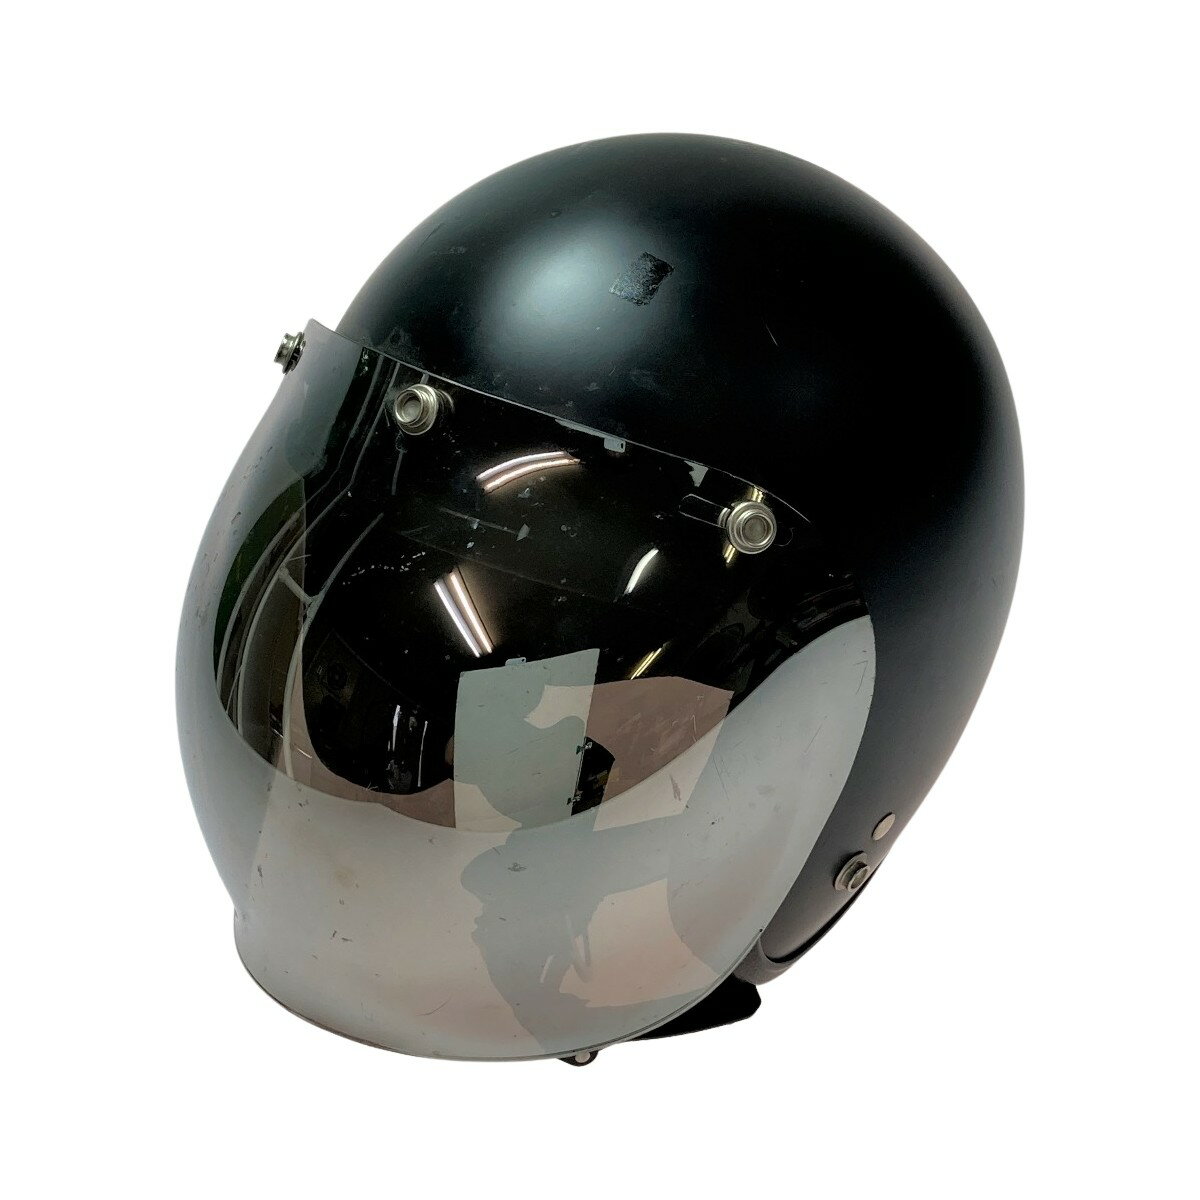 ◎◎【中古】 72 JAM JET ヘルメット レディース フリーサイズ(55-57cm) バブルシールドミラー付 Cランク